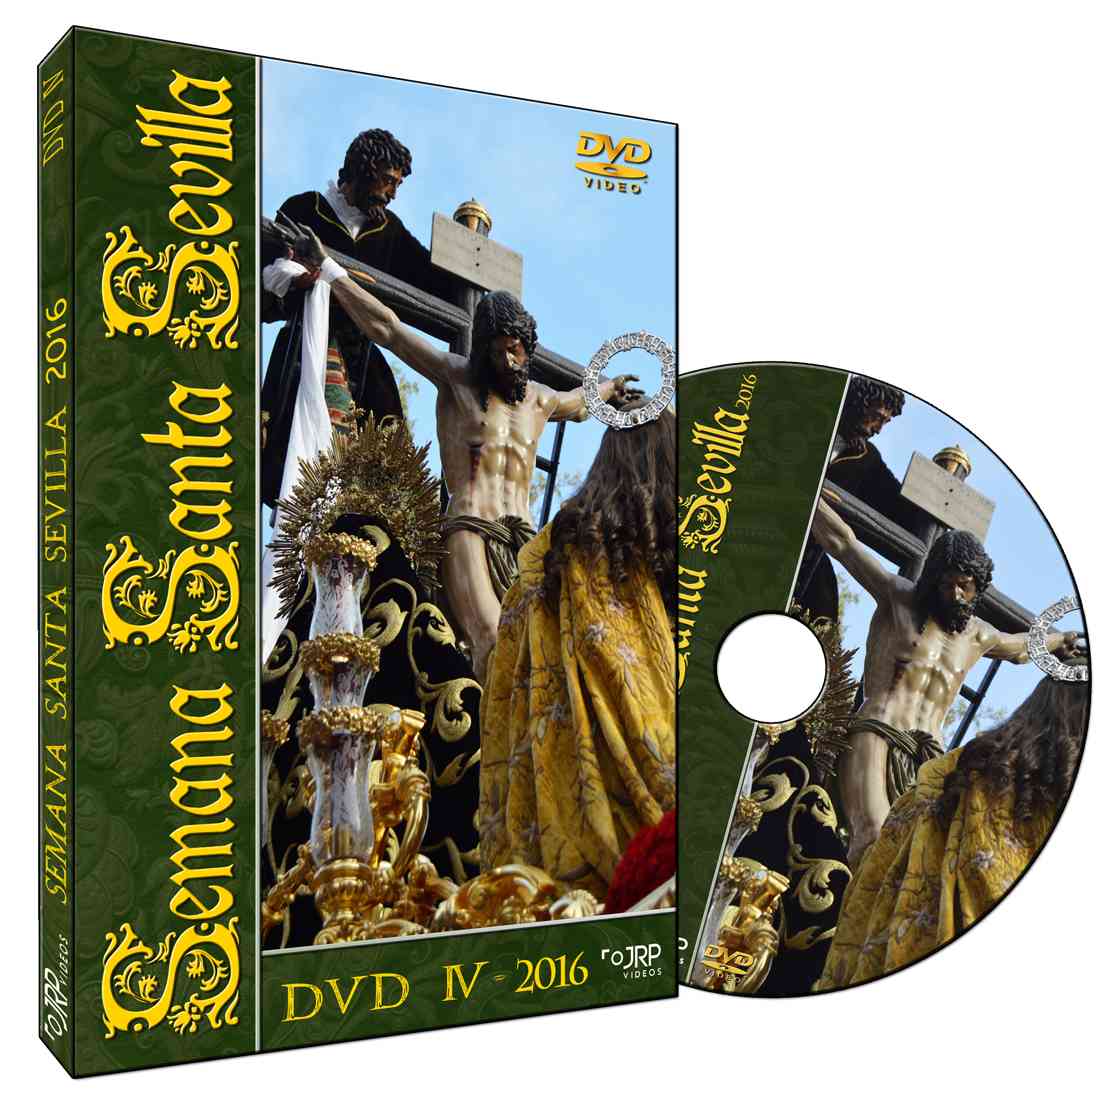 DVD pack 6 - Semana Santa de Sevilla 2014